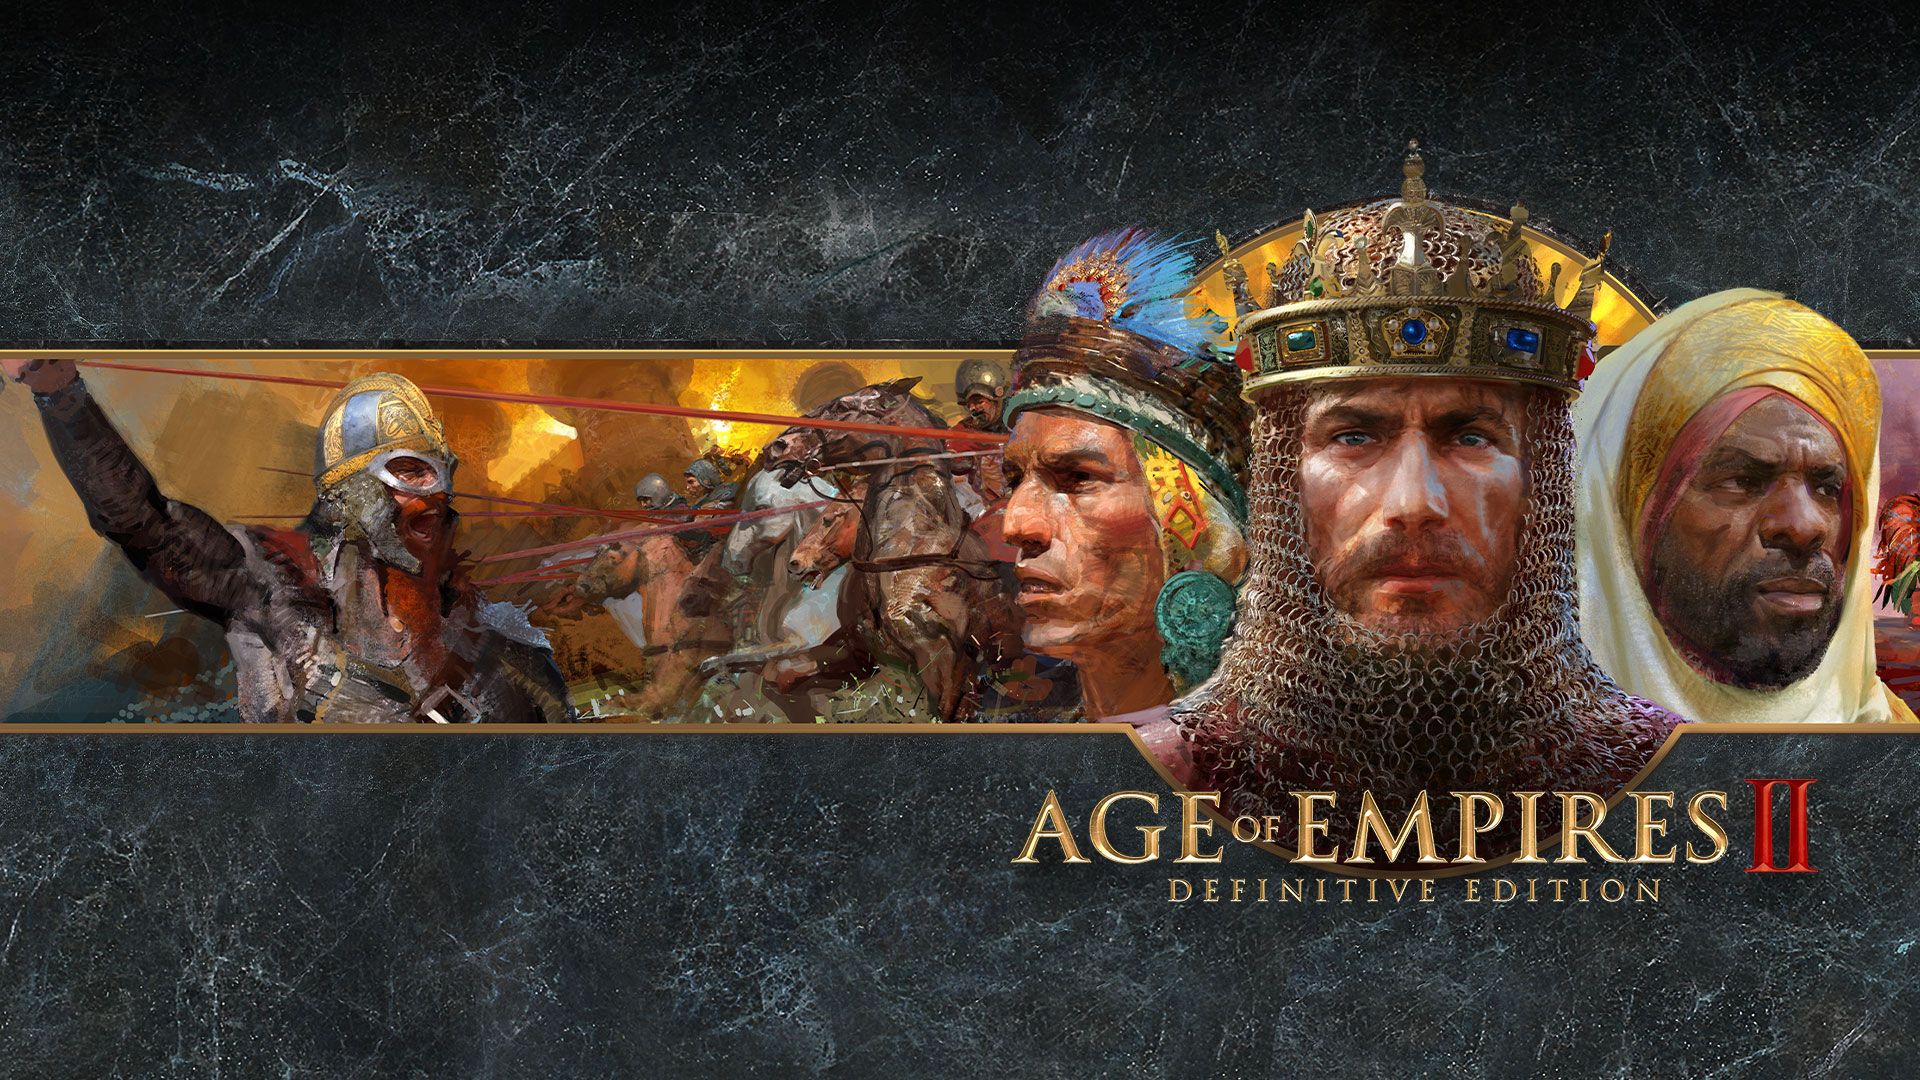 Logo hry Age of Empires II Definitive Edition s uměleckým ztvárněním válčících frakcí